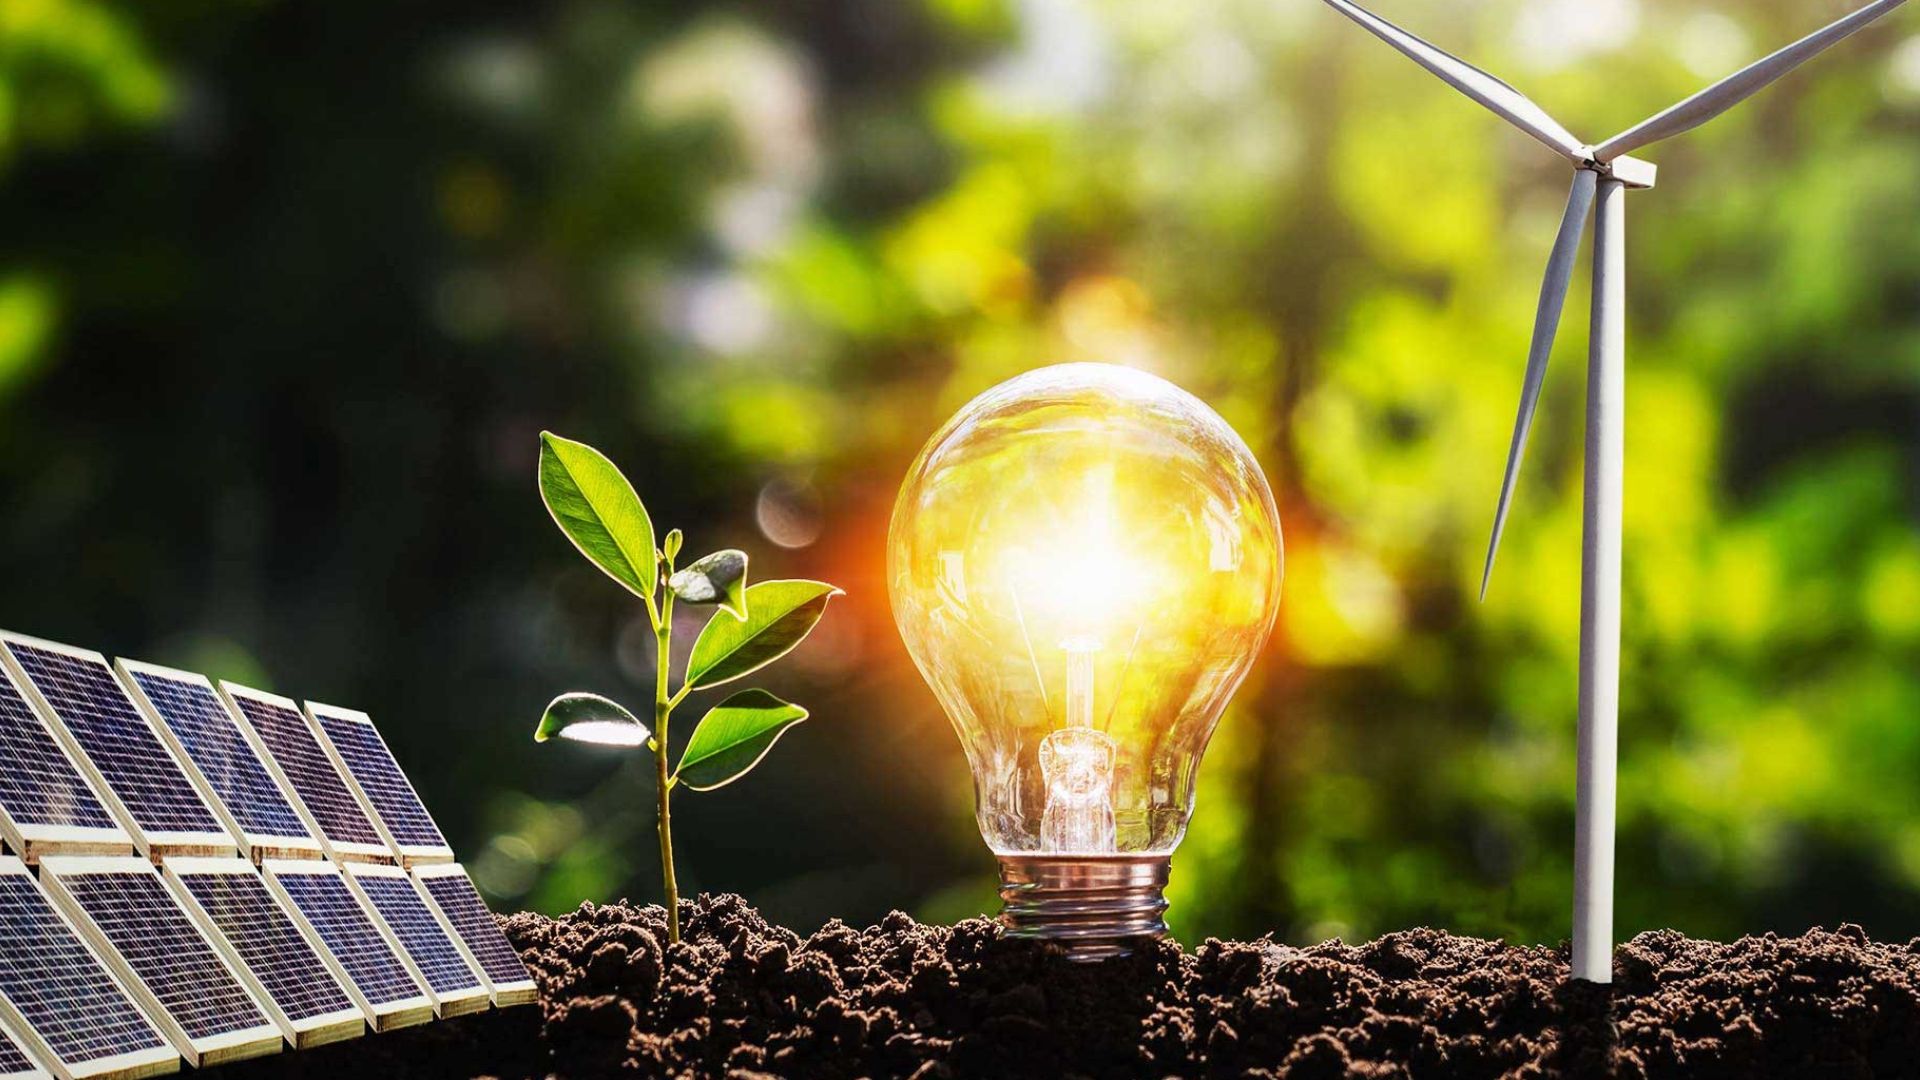 Los avances en tecnología de la biotecnología y su impacto en la industria de la energía renovable. - Revista Enred - Noticias de Tecnología y Negocios Ecuador